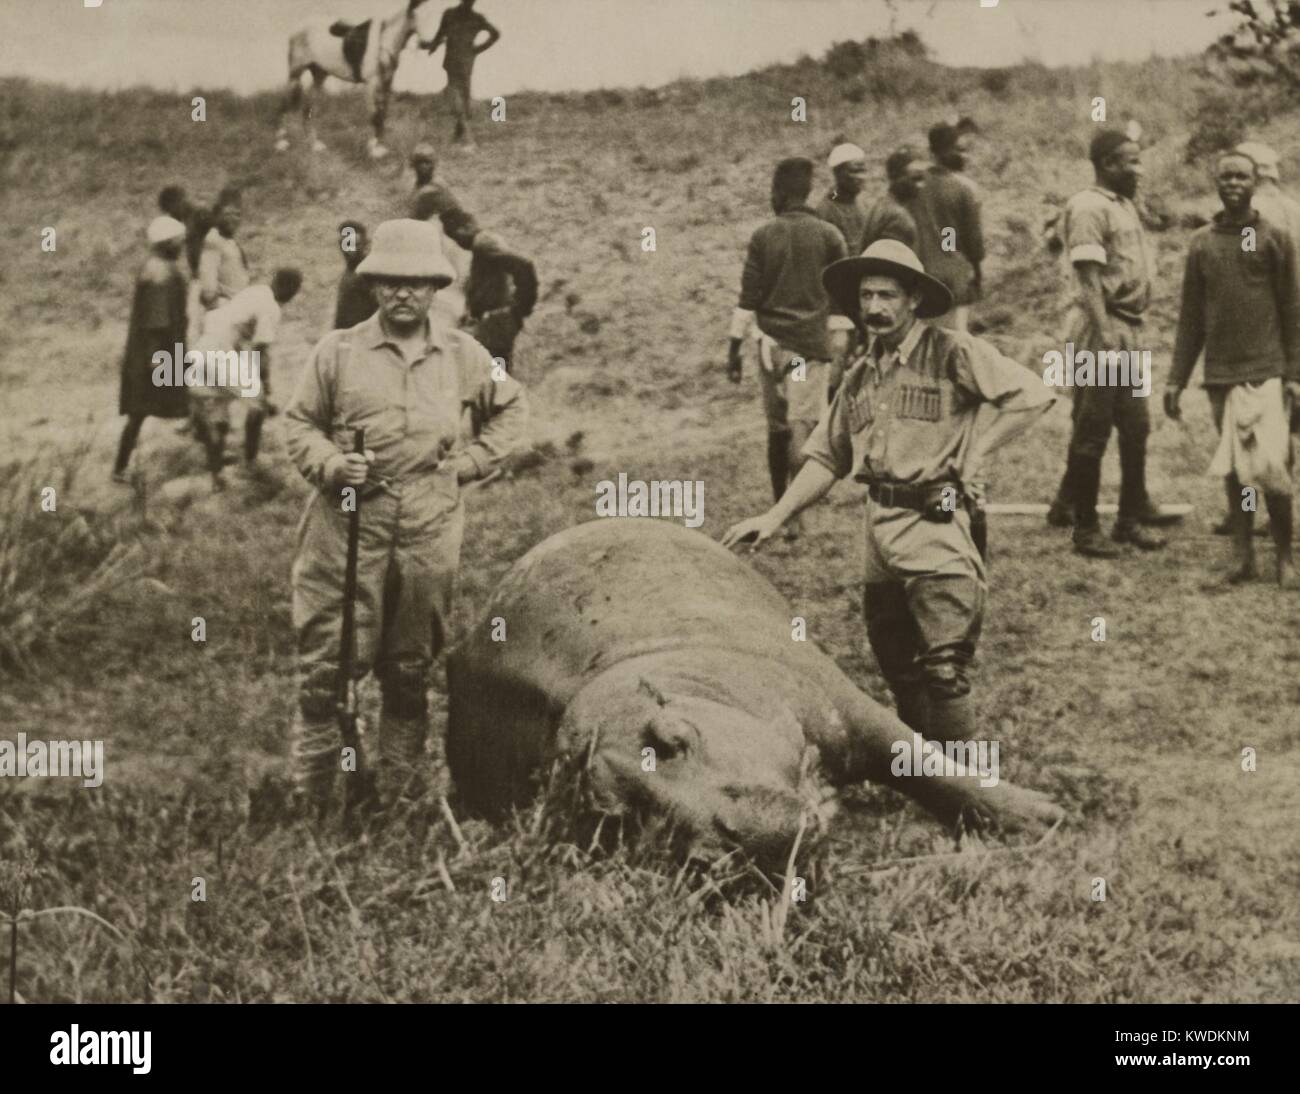 Theodore Roosevelt und unbekannter Mann über ein nilpferd getötet. Im Hintergrund sind afrikanische Arbeiter, die das Tier wird die Haut an. July-Dec. 1909 Während des Smithsonian - Roosevelt African Expedition (BSLOC_2017_8_9) Stockfoto